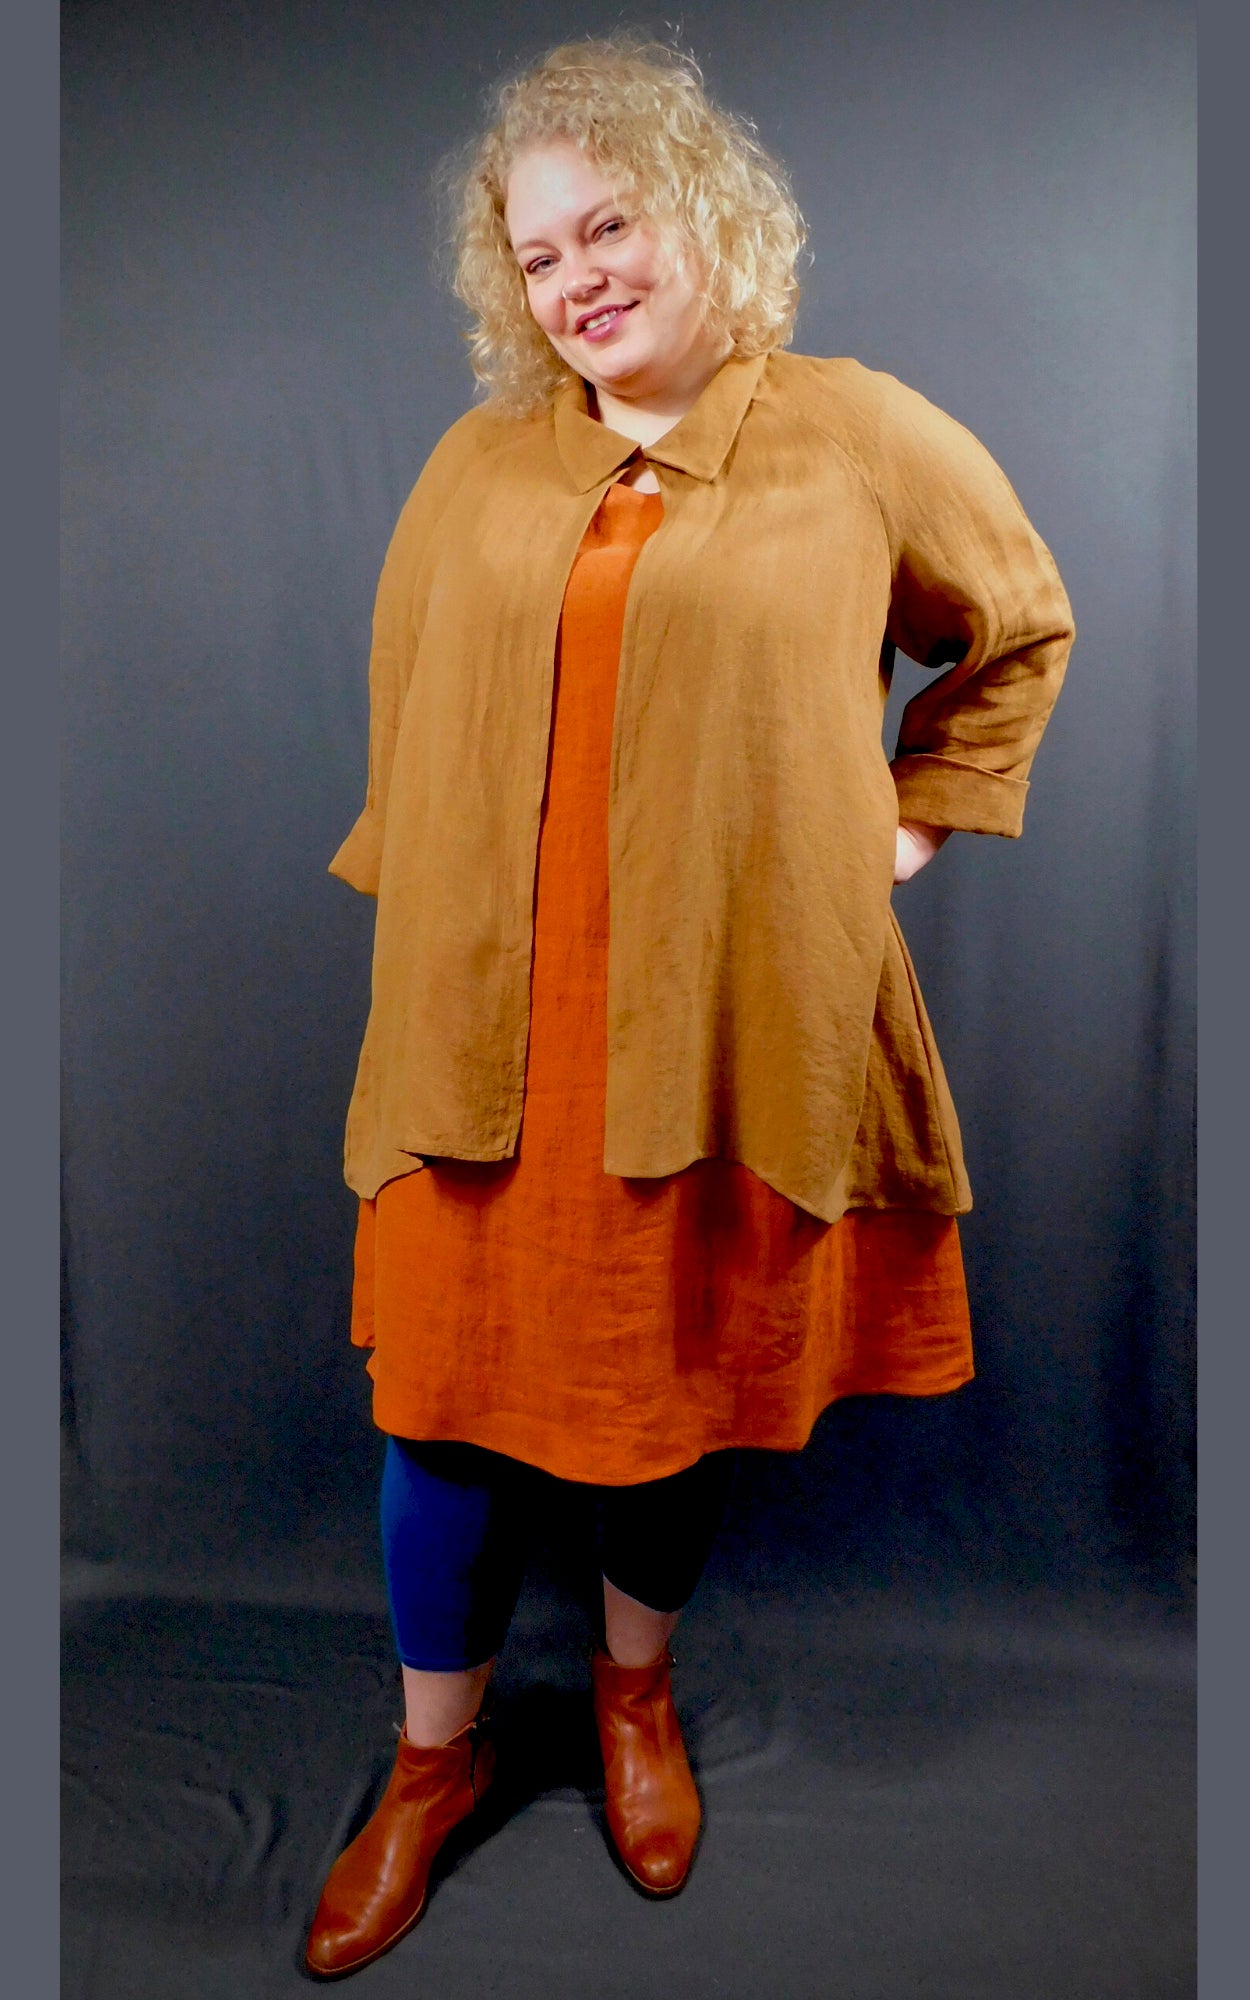 100% Linen Sleeveless Dress w pockets, colour Cognac (Orange), worn under 100% Linen Caramel colour Raglan Sleeve Shirt Jacket